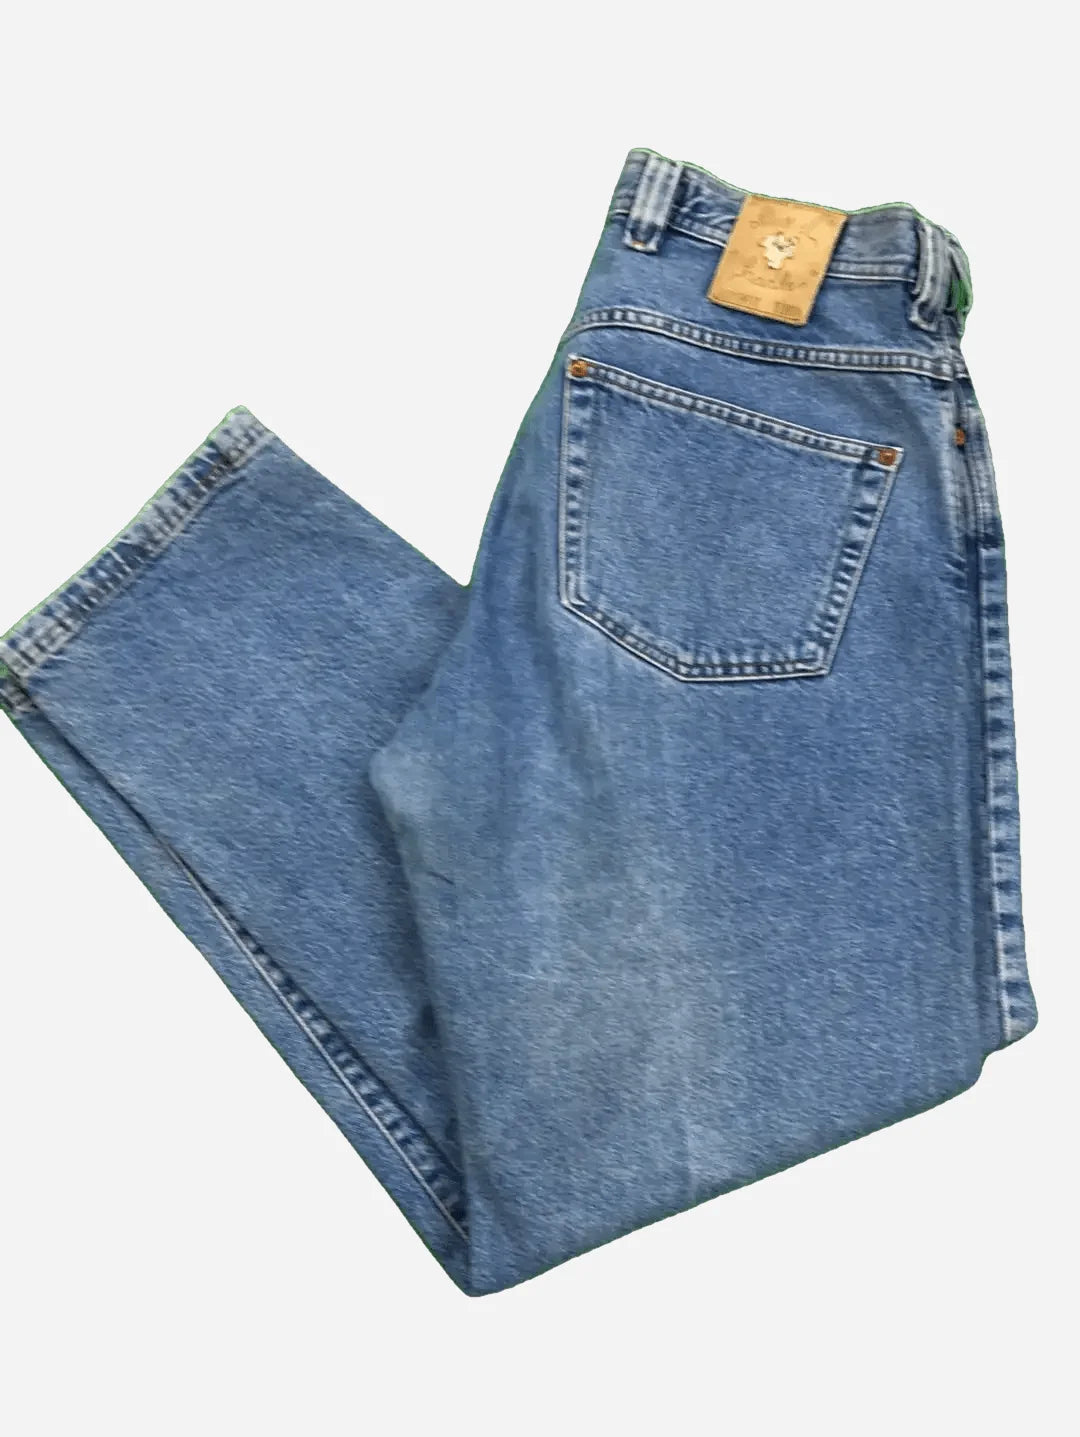 Diesel Jeans 33/31 (M)